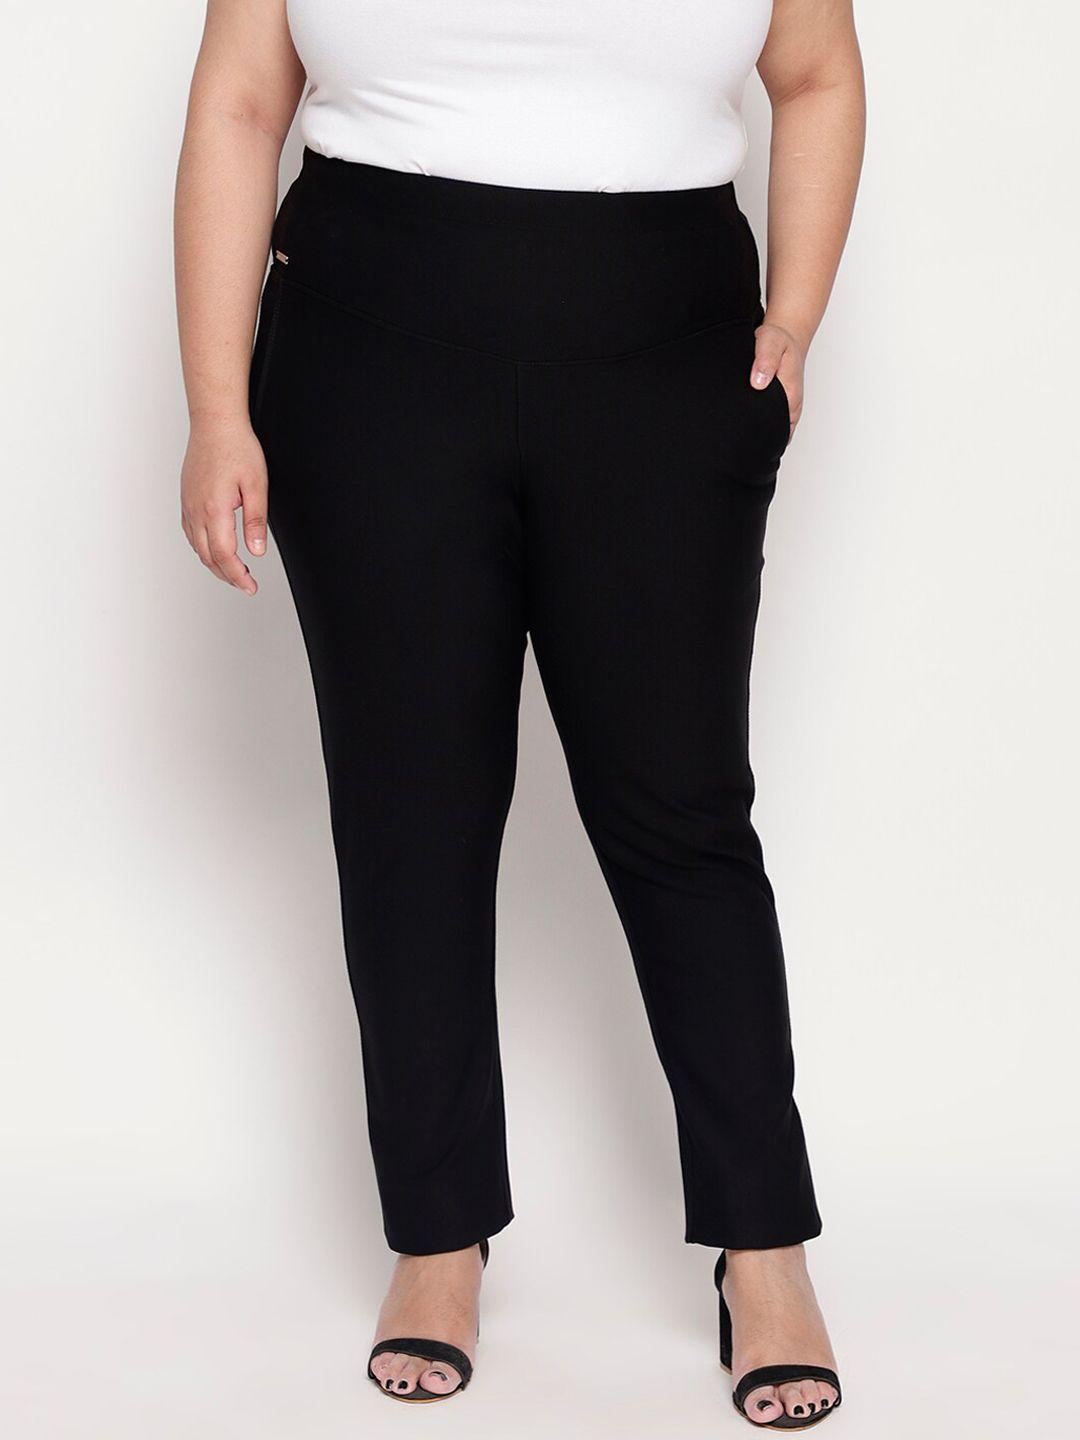 amydus women plus size black slim fit solid formal trousers